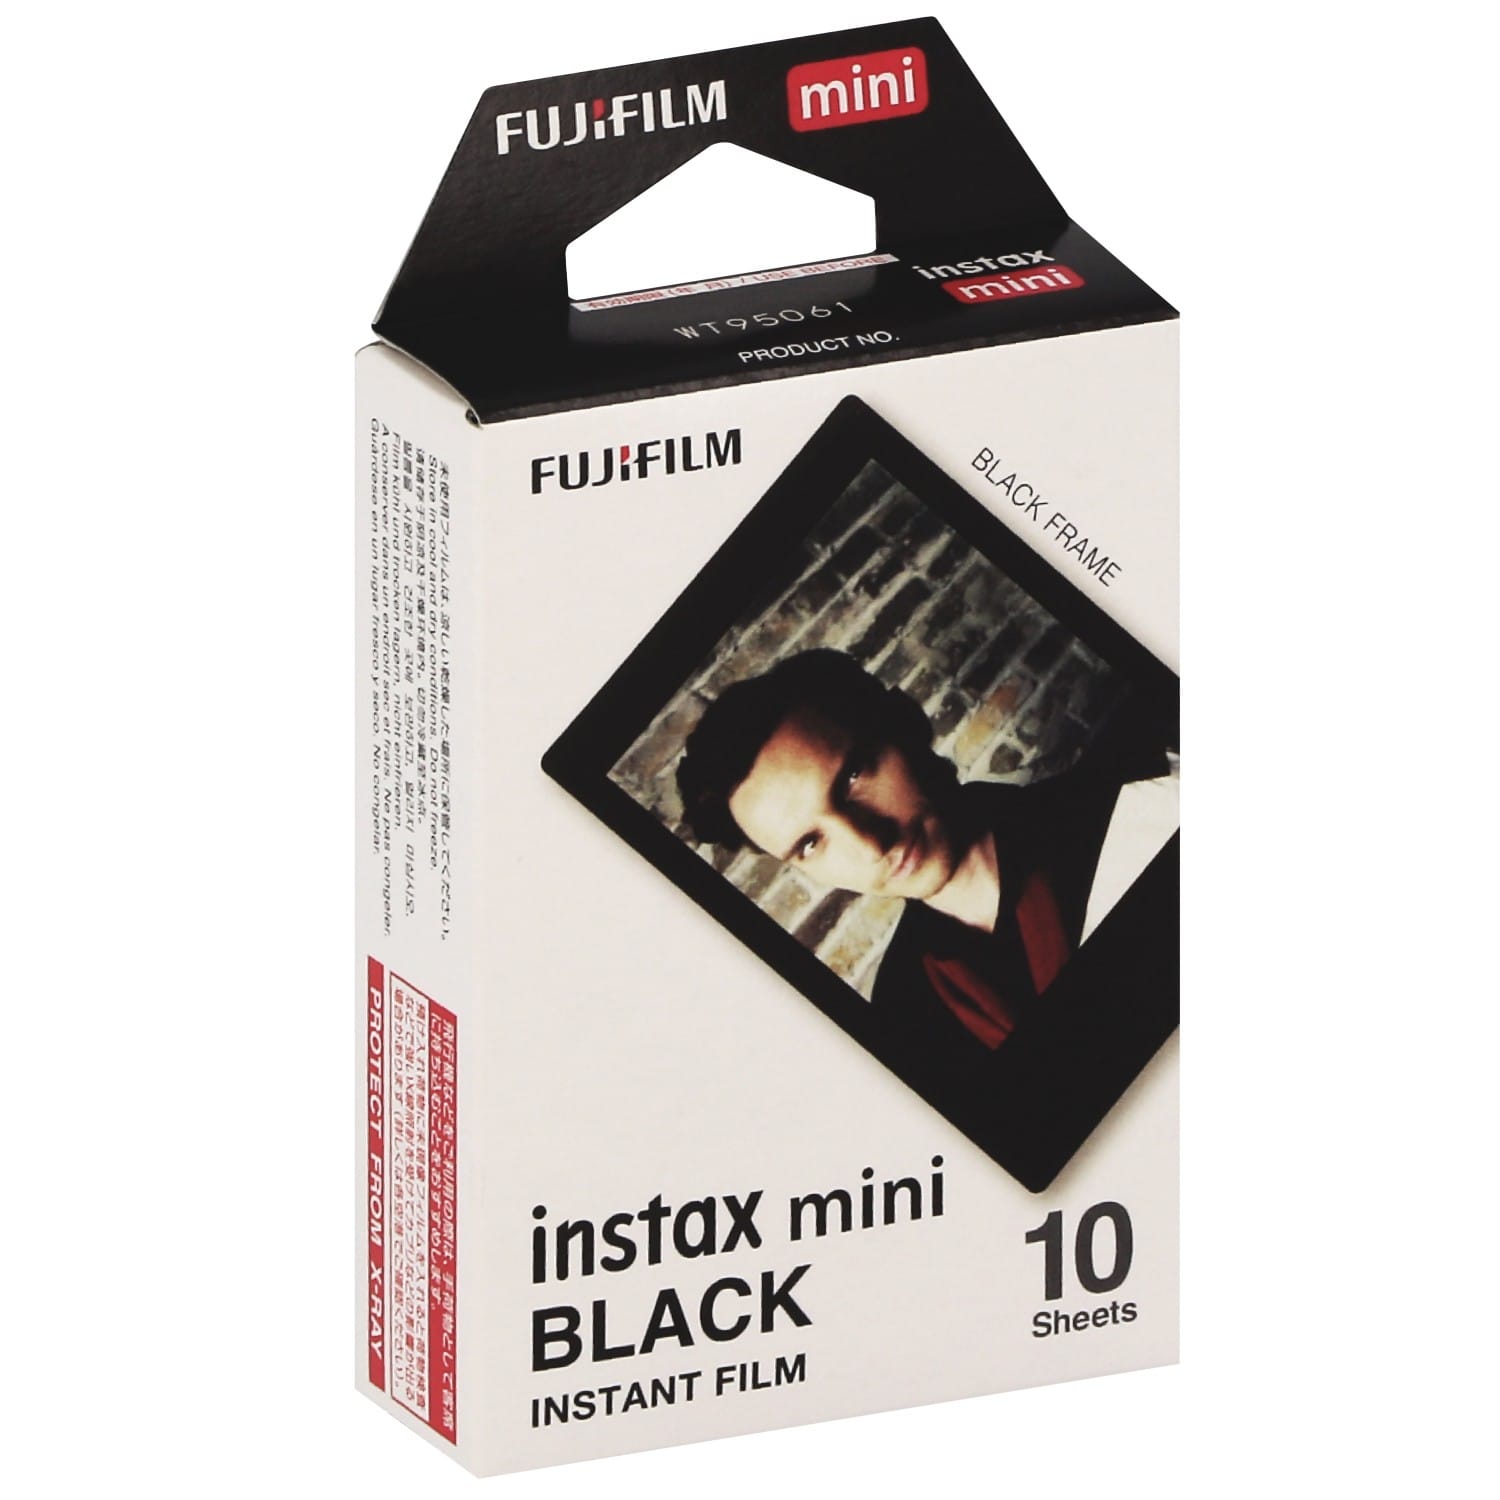 Films instantanés Fujifilm en stock chez